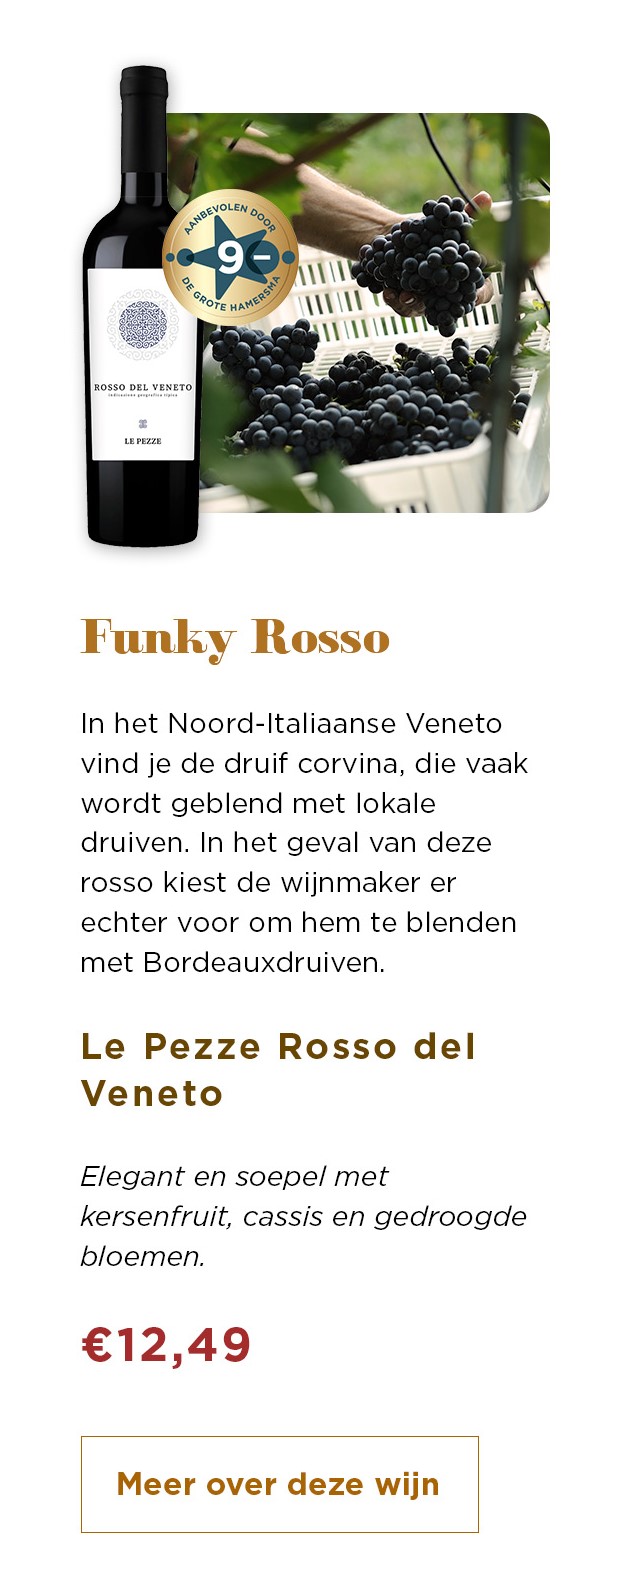 Funky Rosso | Le Pezze Rosso del Veneto voor € 12,49 | Meer over deze wijn